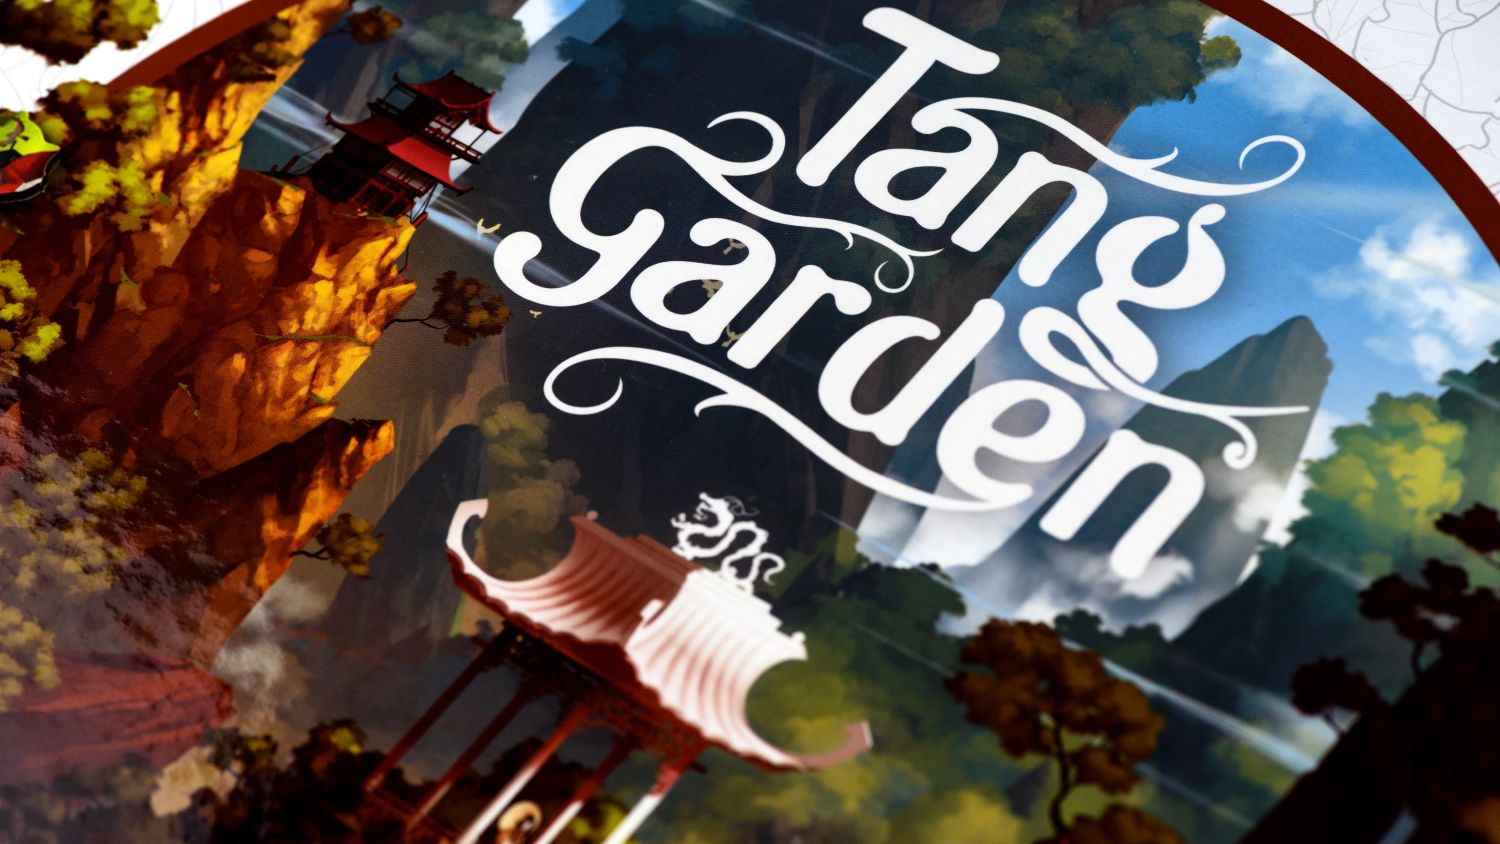 Tang Garden